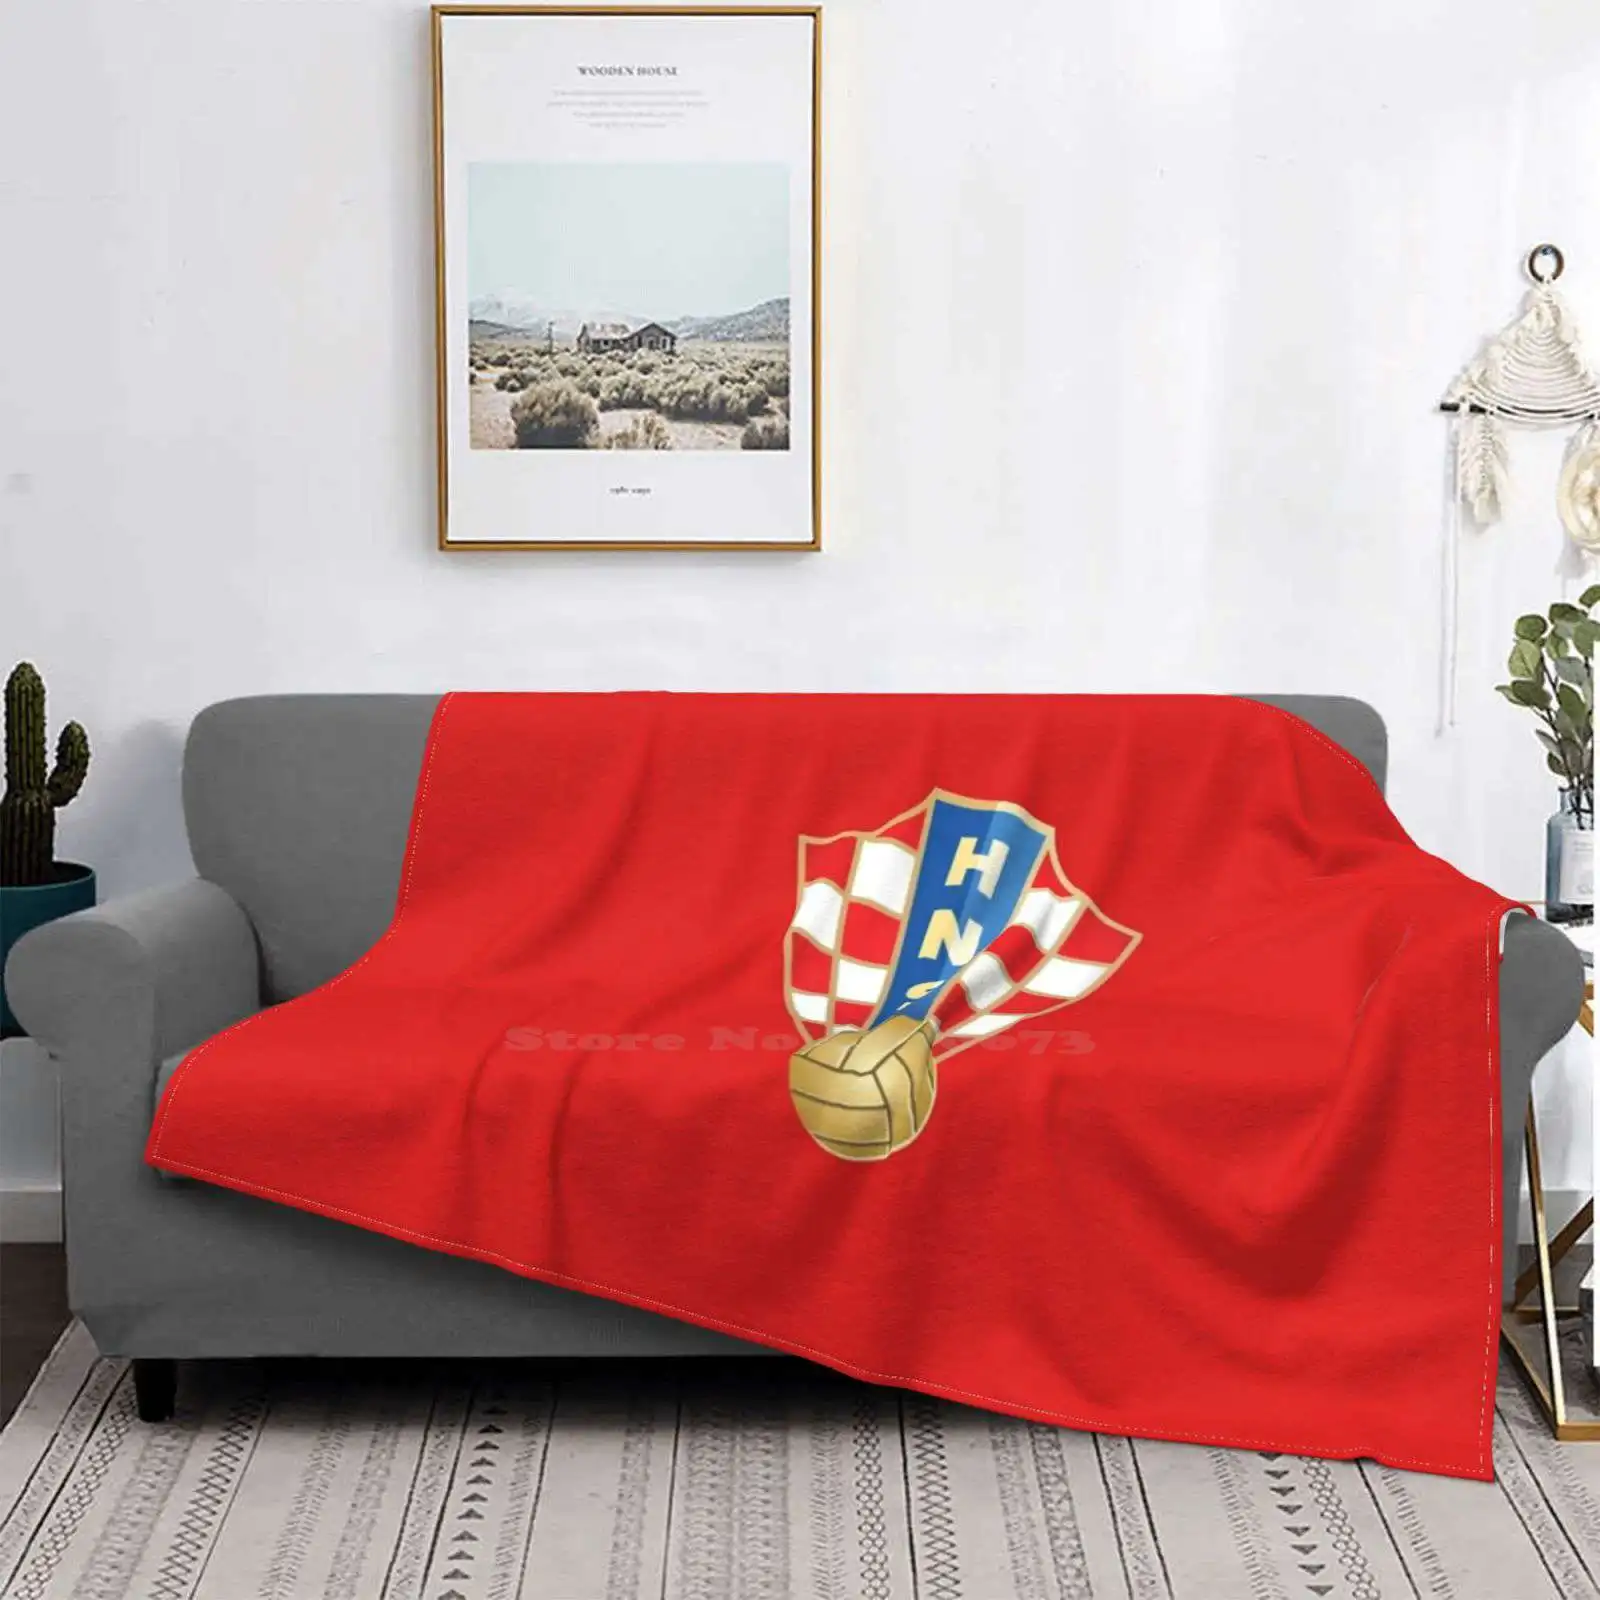 

The Red Blazers-Manta portátil para casa, sofá cama, Camping, coche, avión, viaje, Croacia, vatrei, Theblazers, fútbol, hrvatka